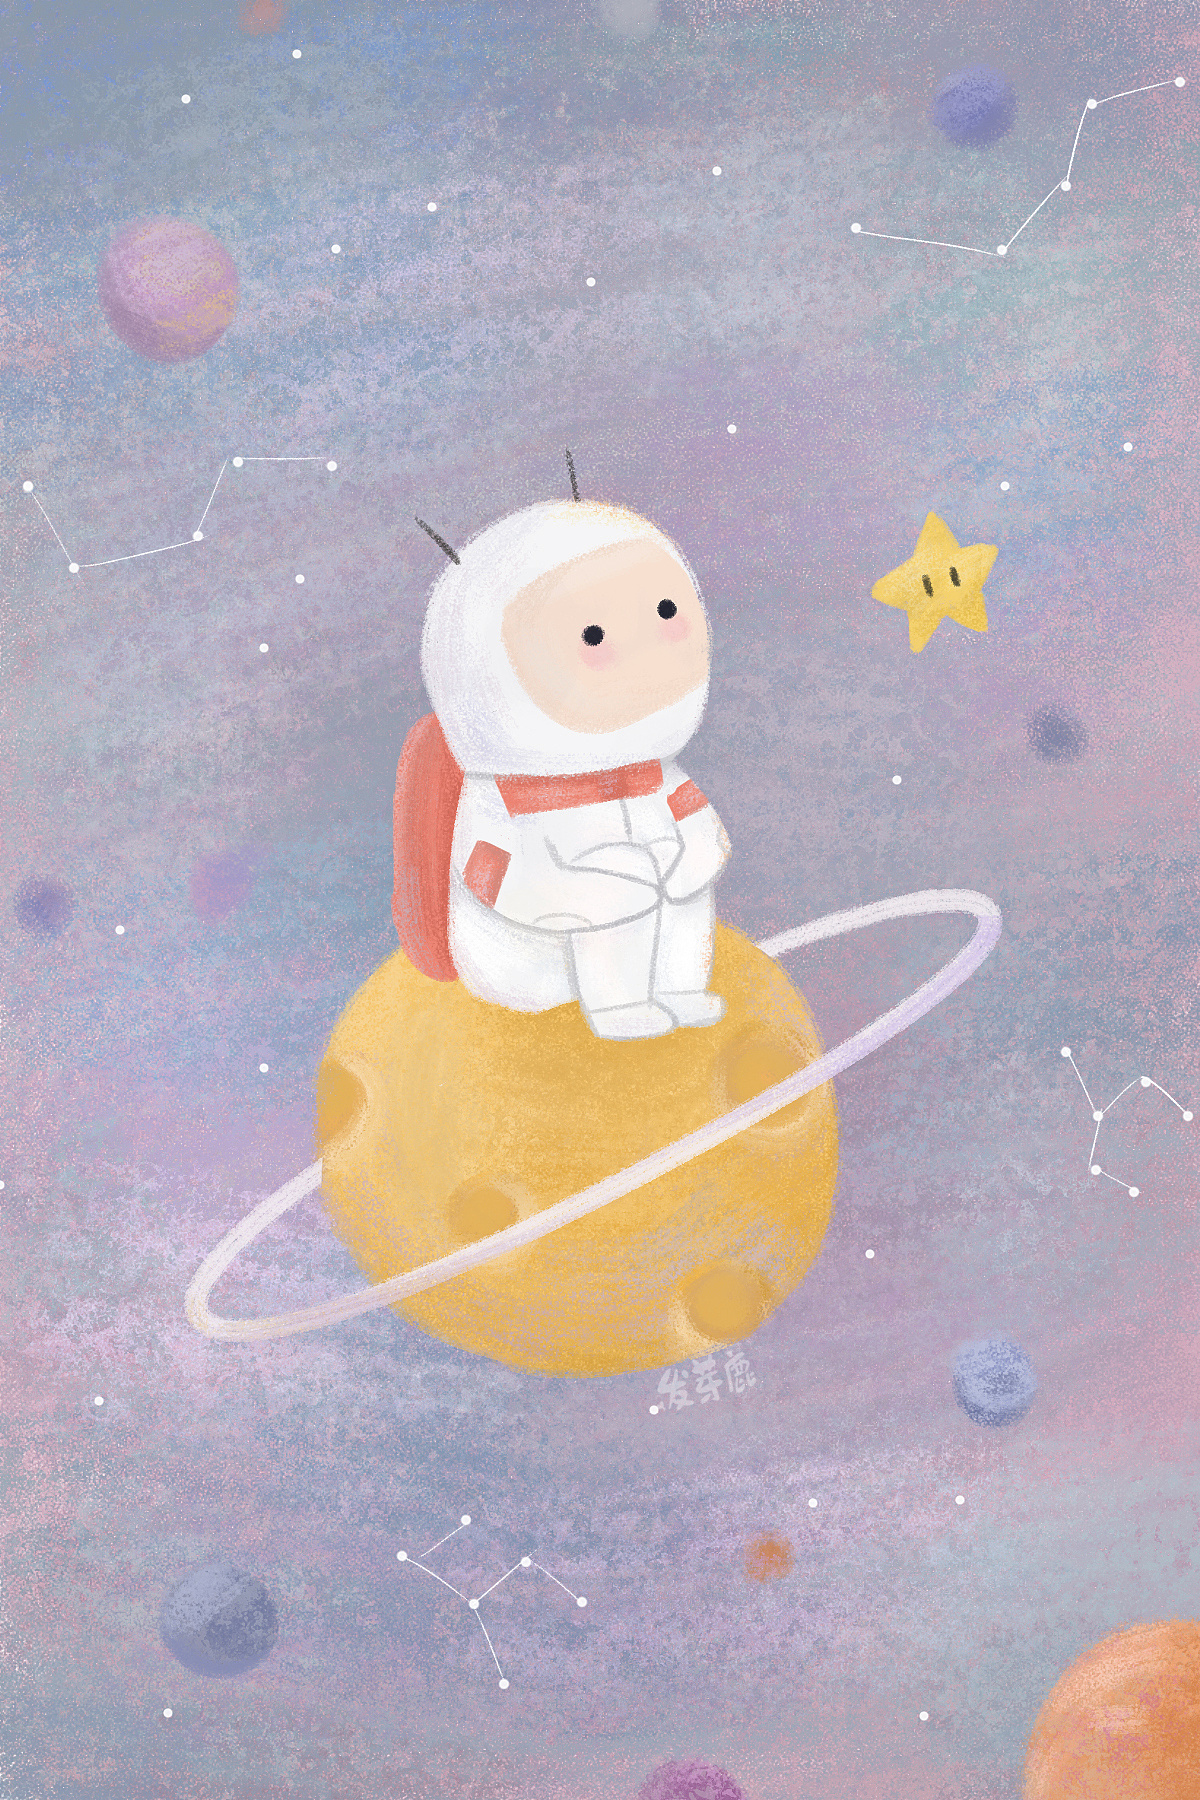 小小宇航员的第一次太空旅行,因为认识了小